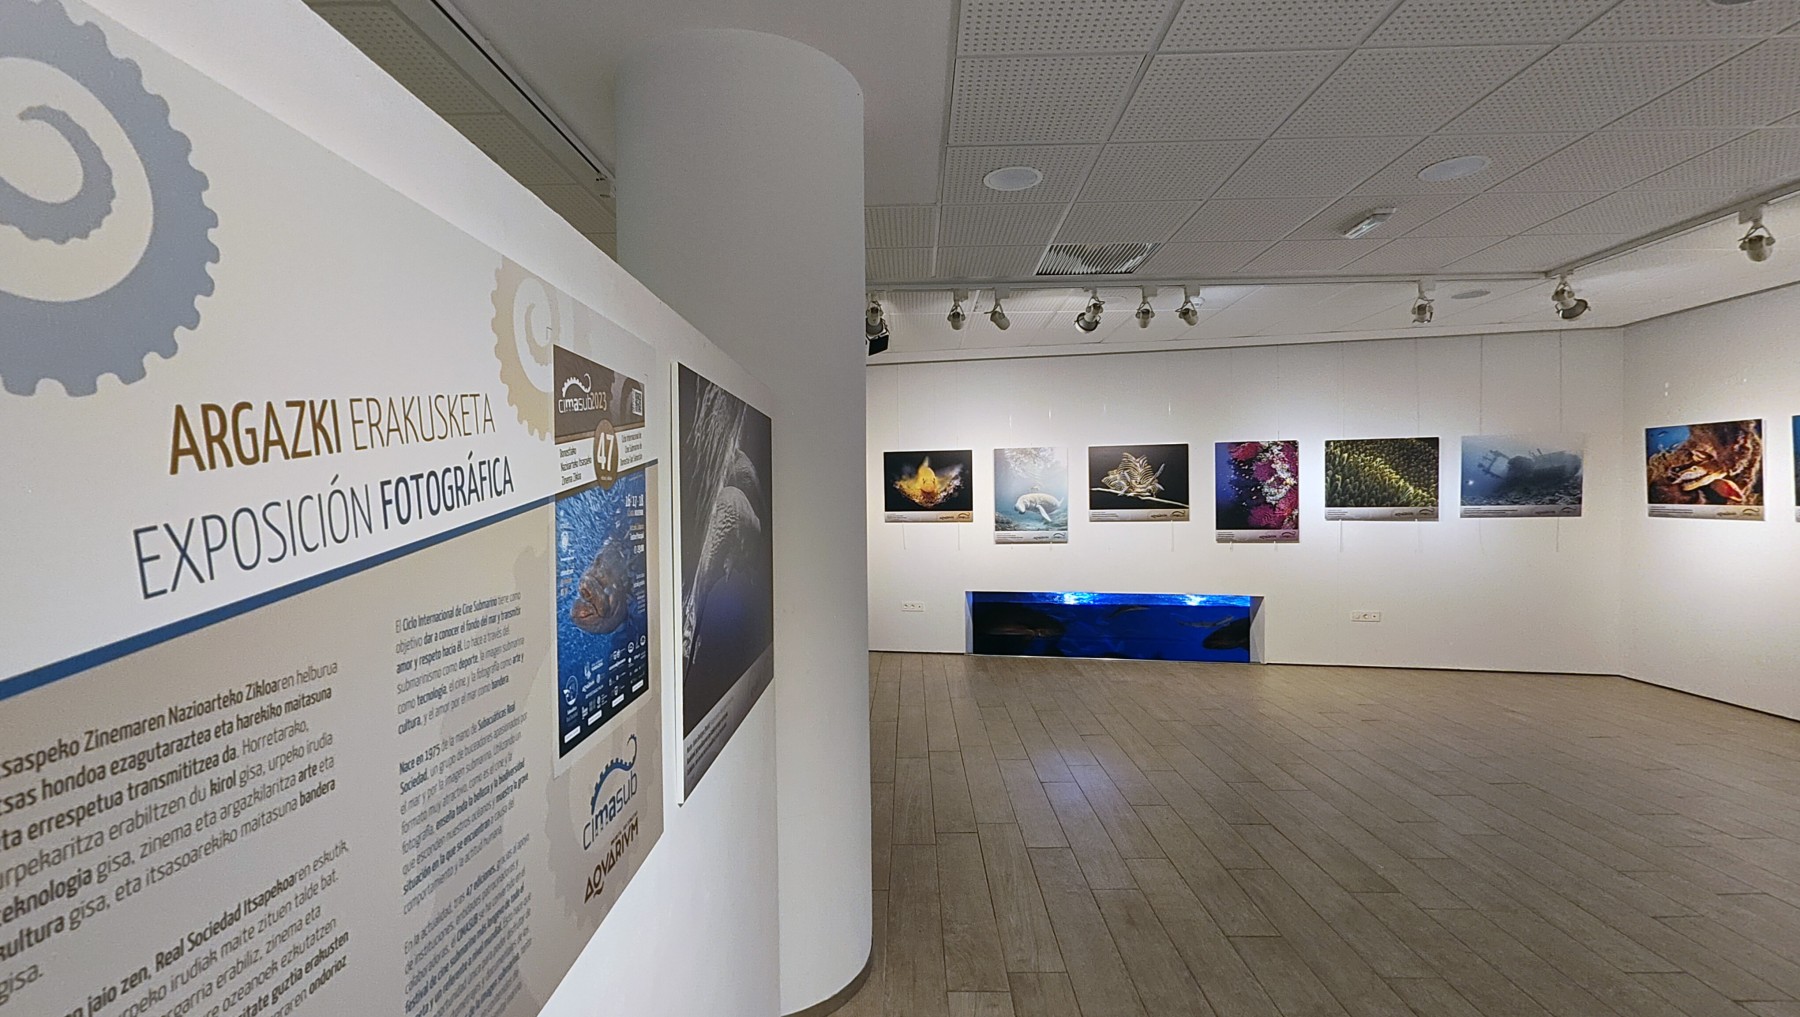 Tres impactantes exposiciones fotográficas submarinas abren sus puertas en San Sebastián